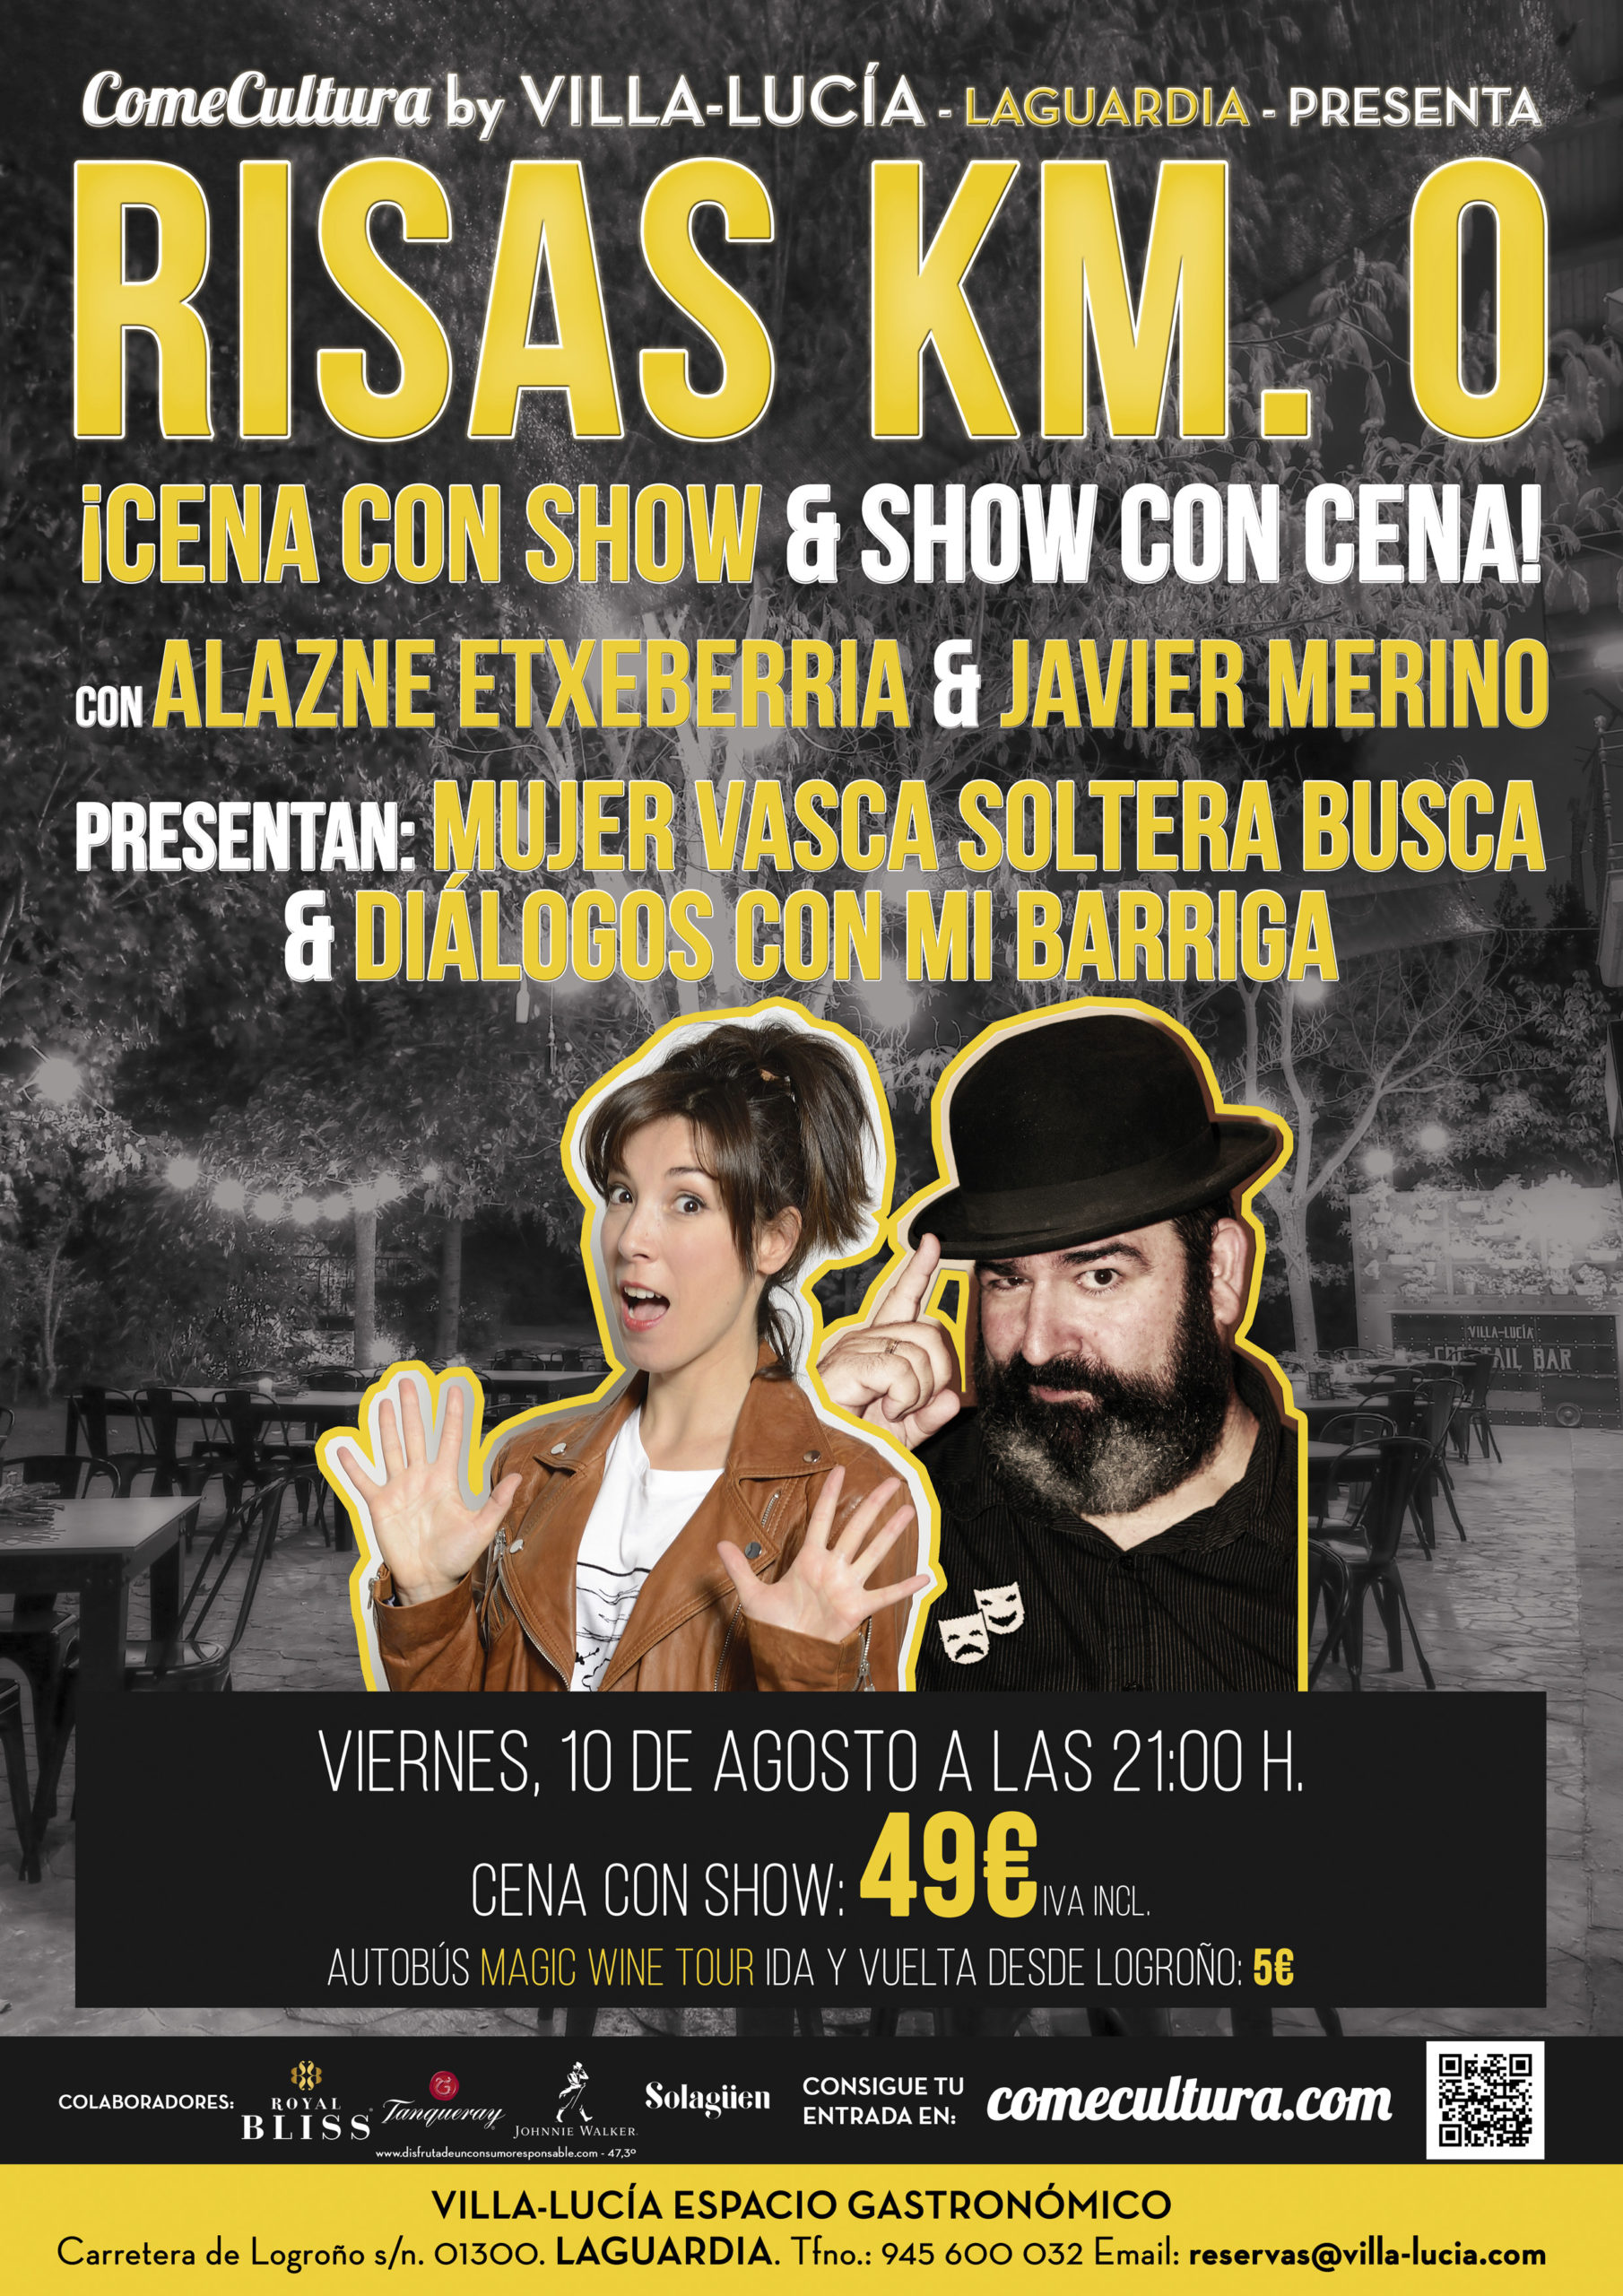 Risas Km. 0 con Alazne Etxeberria & Javier Merino by Villa-Lucía – 10 Agosto